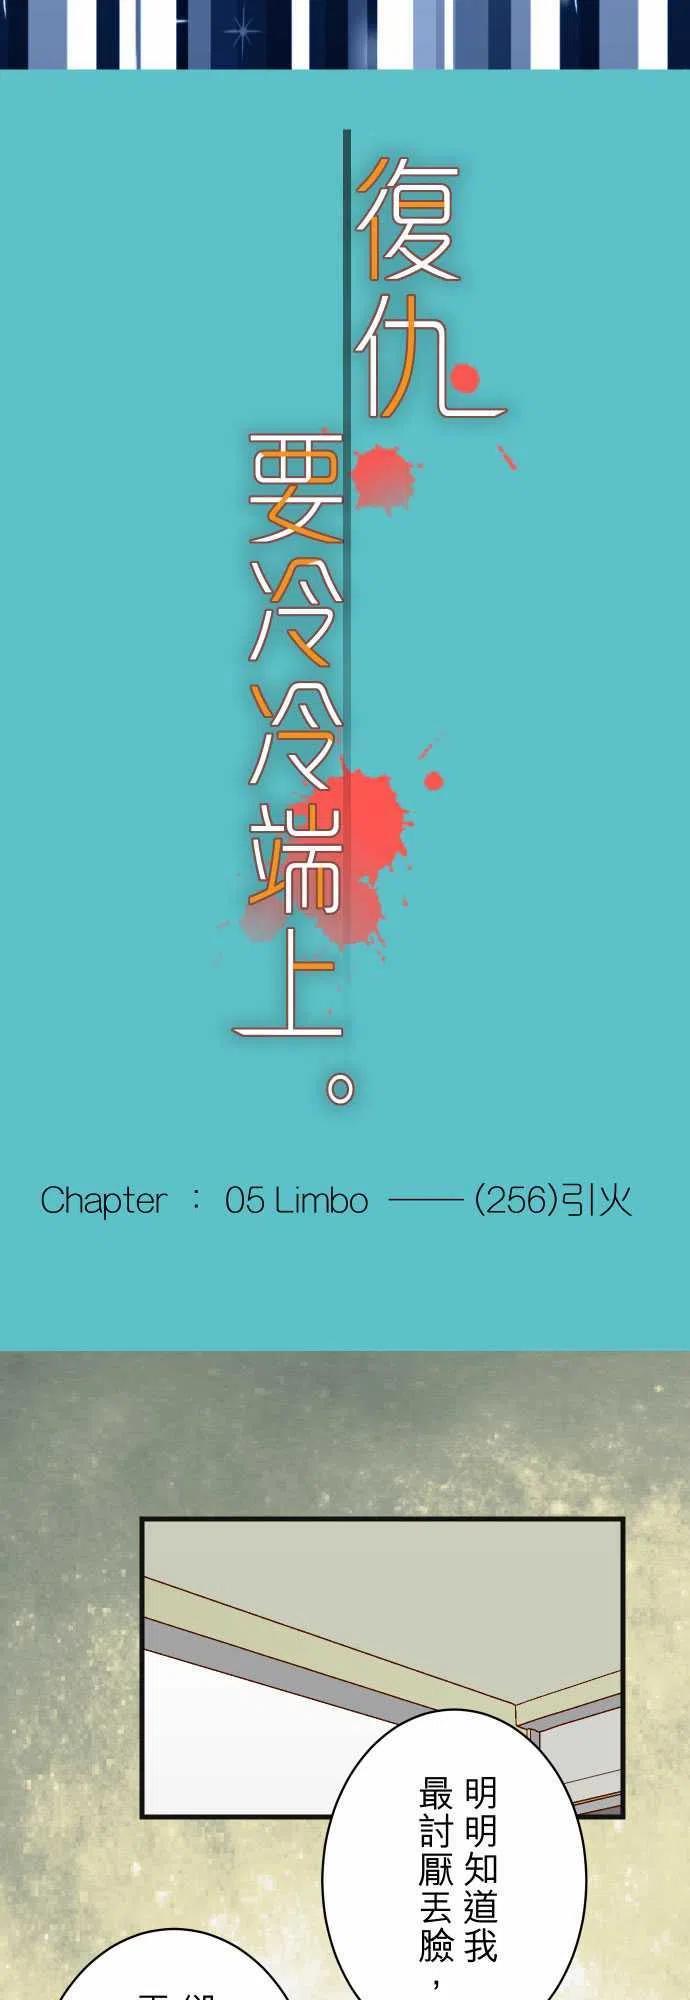 第五章 Limbo 265 引火3